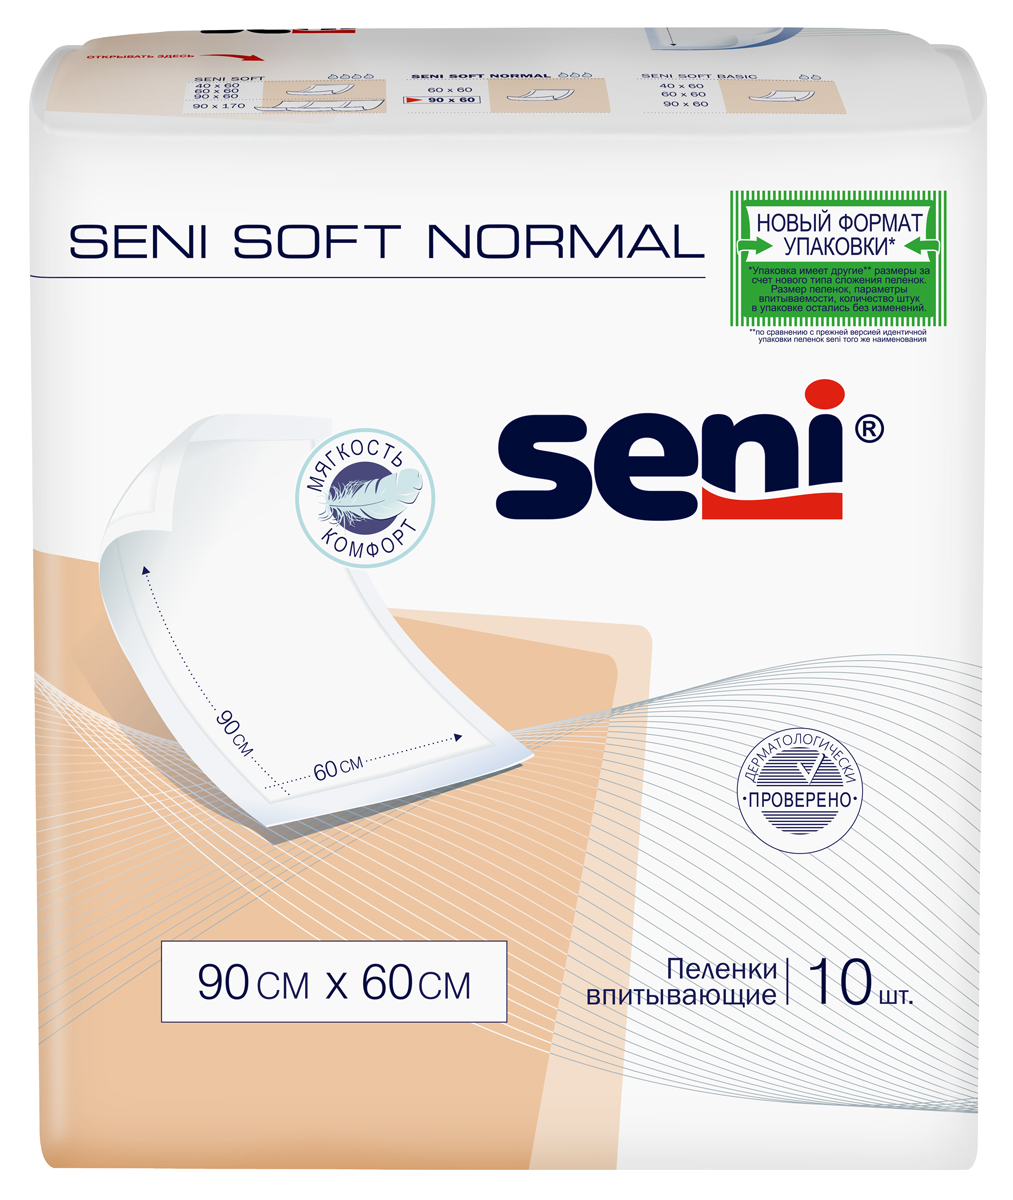 Пеленки Seni Soft Normal, 90 см x 60 см, 10 шт. пеленки впитывающие одноразовые soft basic seni сени 60x90см 10шт